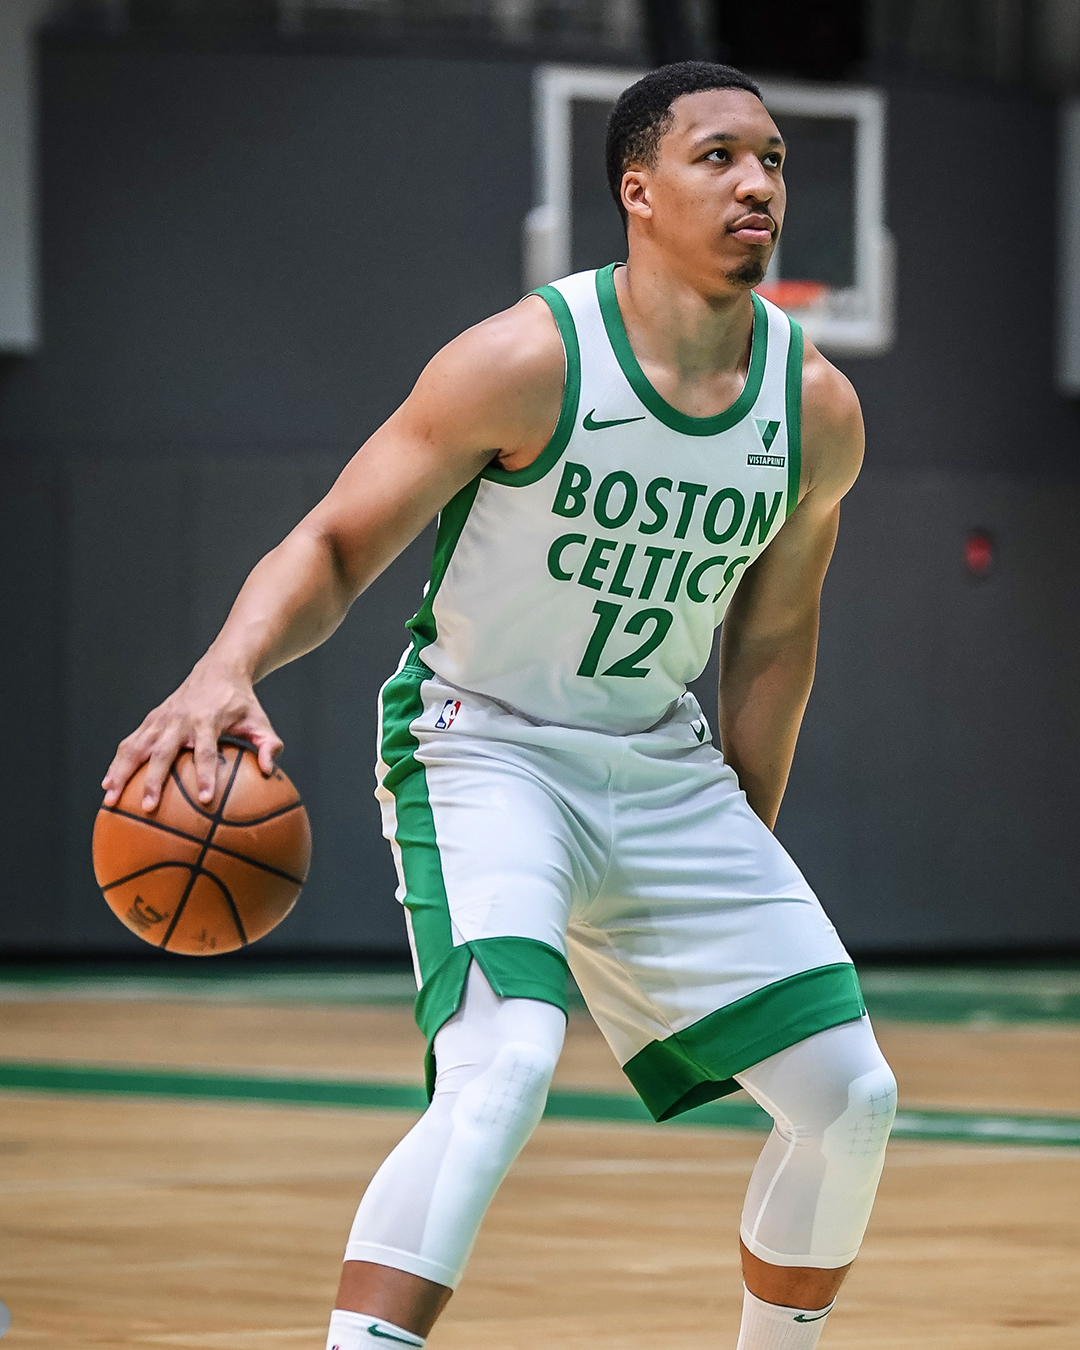 Boston Celtics Select Vistaprint as Next Jersey Patch Sponsor